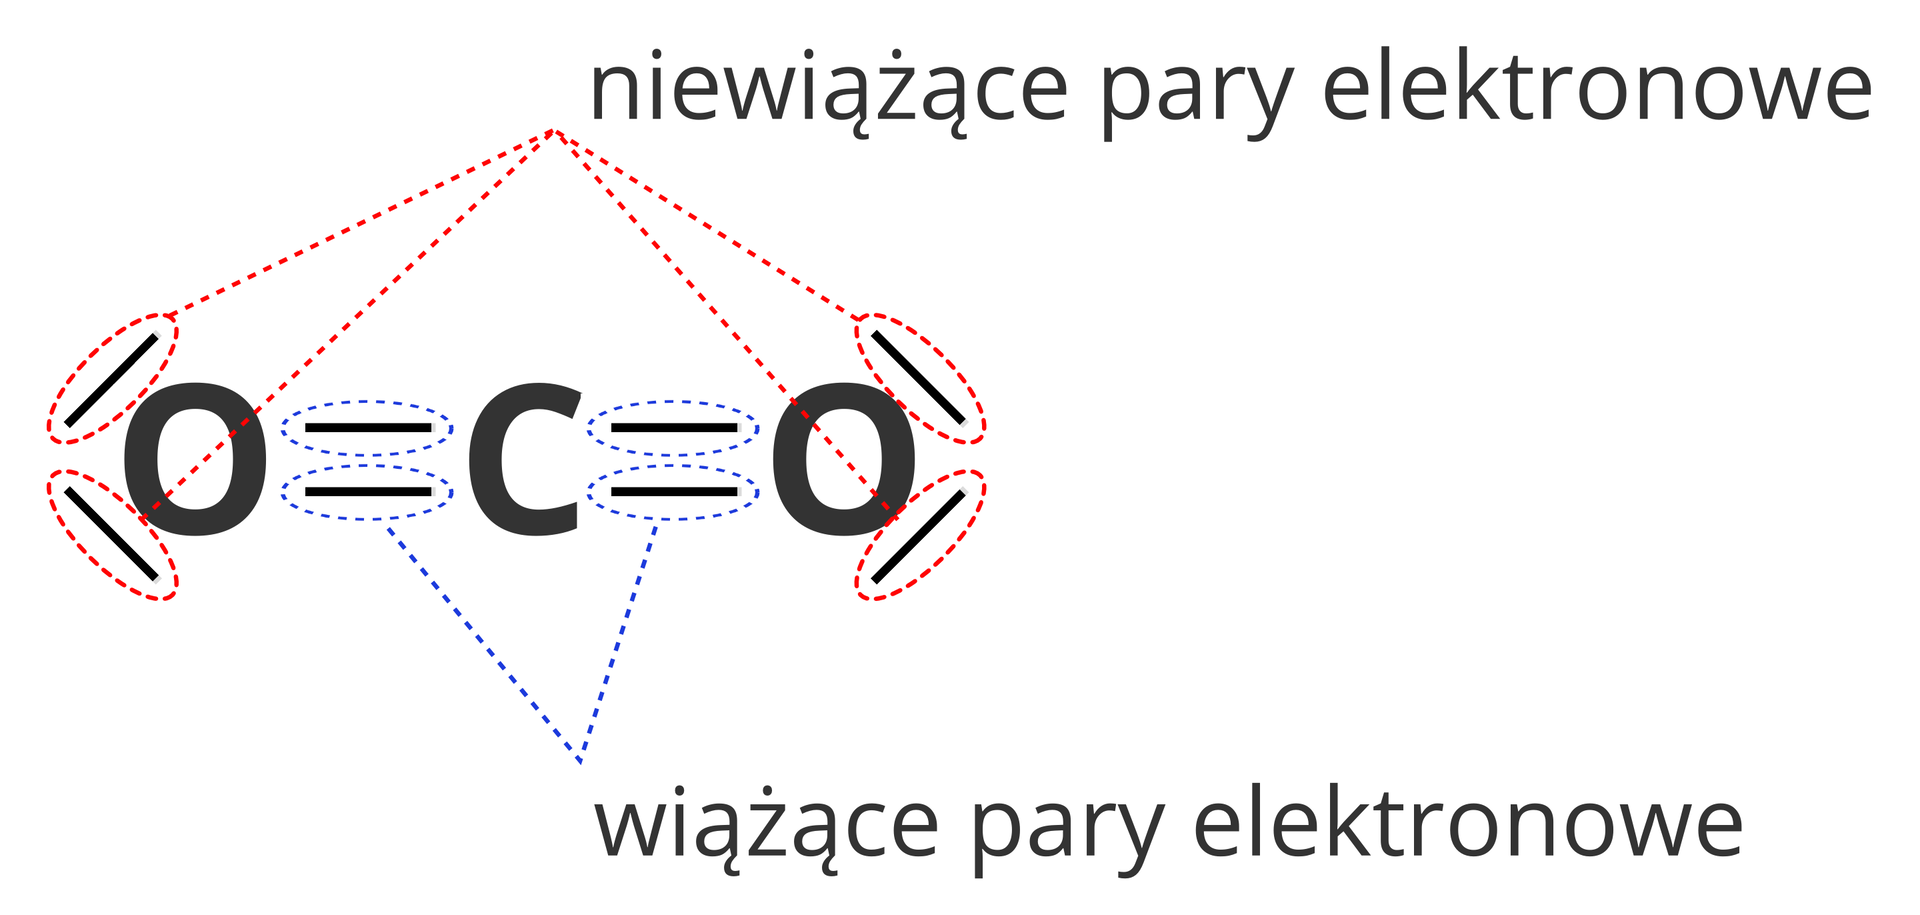 Ilustracja przedstawia różnice pomiędzy rodzajami par elektronowych w cząsteczce dwutlenku węgla, a przy okazji również w sposobie ich oznaczania w zapisie kreskowym. Rysunek przedstawia cząsteczkę dwutlenku węgla w zapisie elektronowym kreskowym. Kreski łączące atomy tlenu z atomem węgla zaznaczone są niebieskim kolorem i podpisane jako Wiążące pary elektronowe. Z kolei kreski po bokach atomów tlenu ale nie łączące ich z niczym oznaczone są kolorem czerwonym i podpisane Niewiążące pary elektronowe.